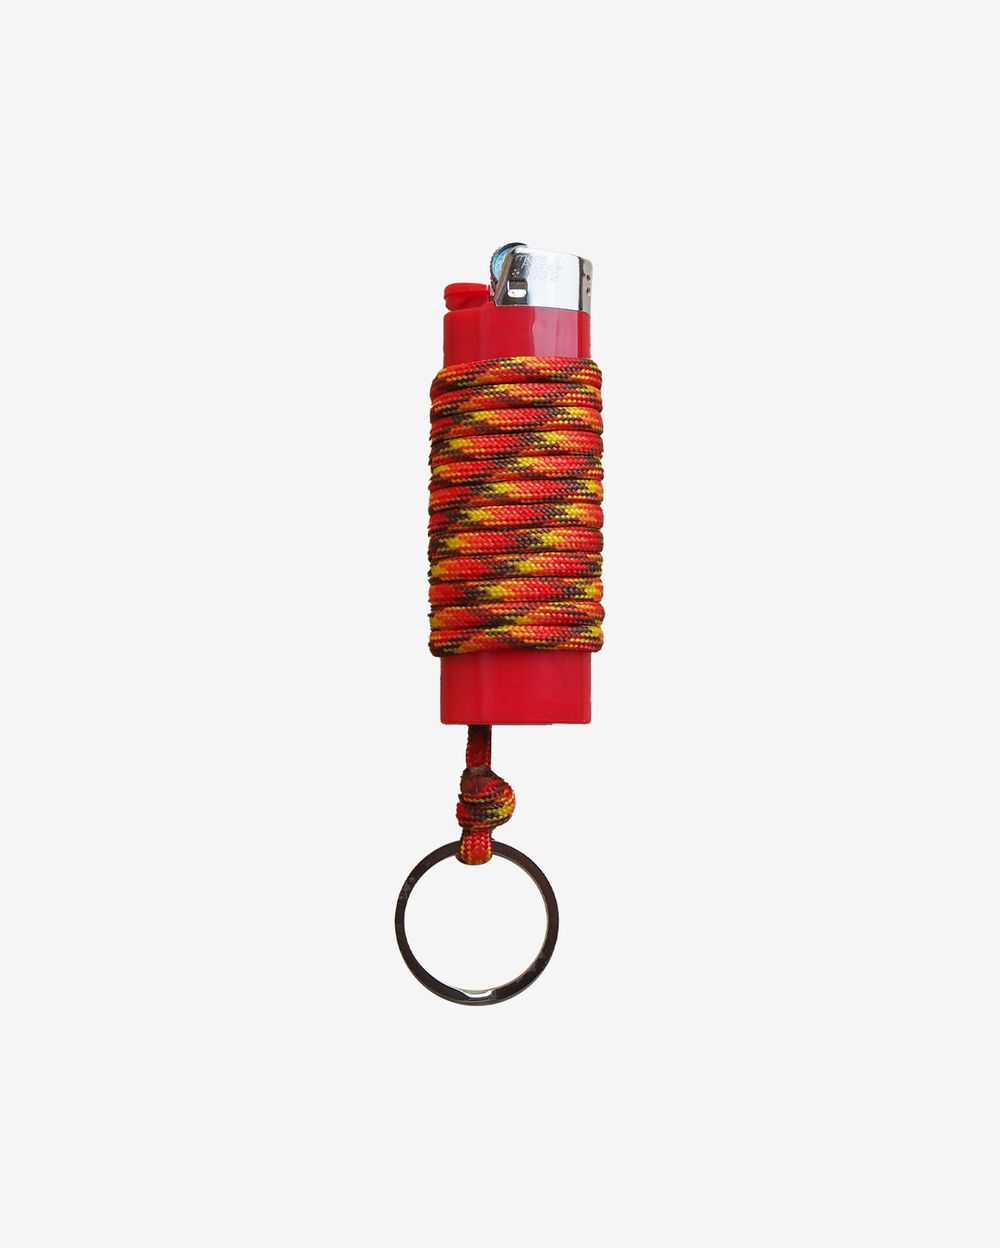 Зажигалка Ack Items красная (красно-жёлто-коричневый шнурок)